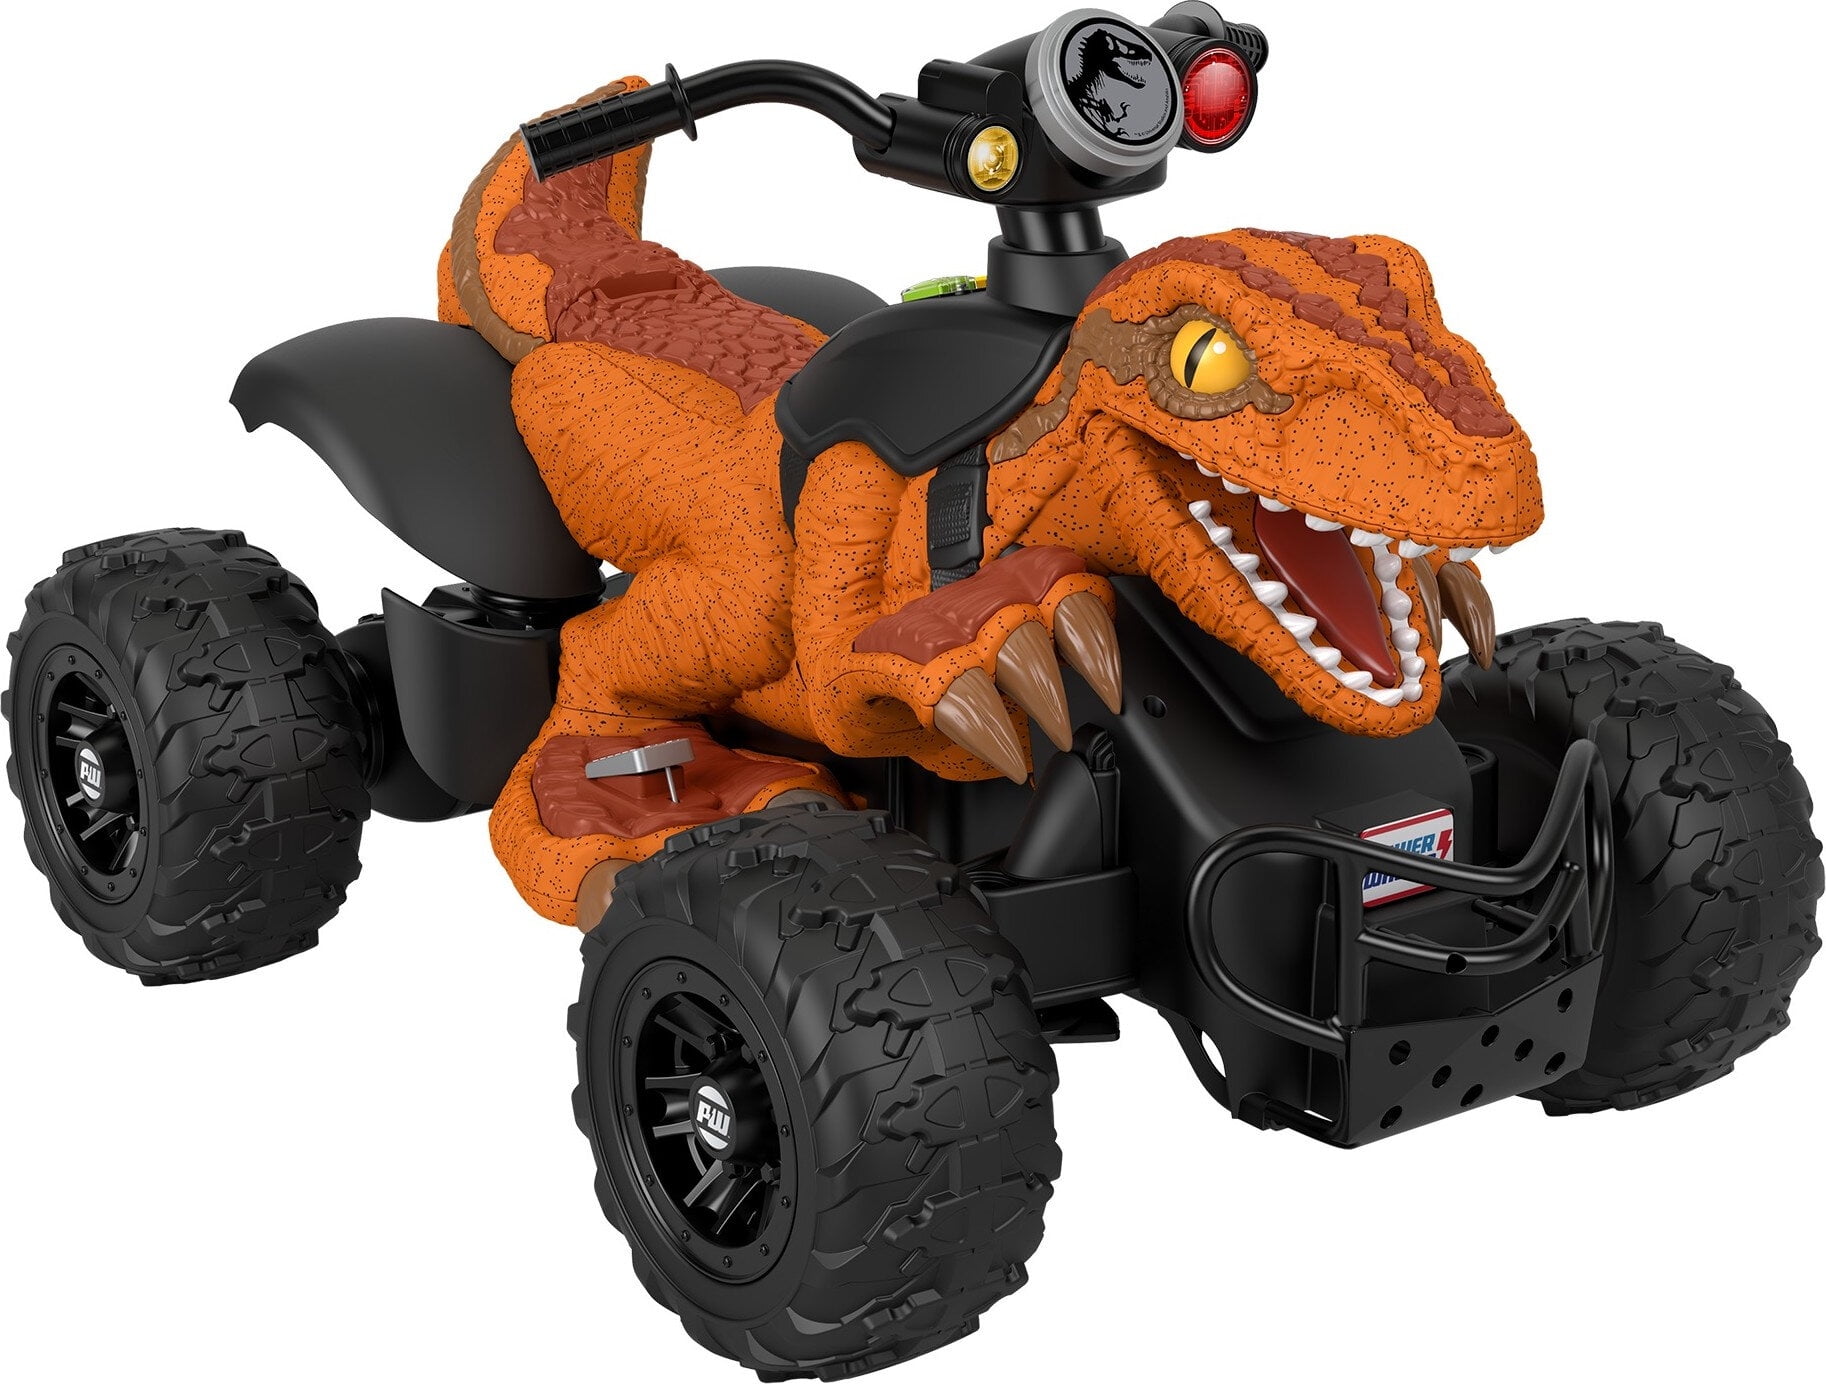 Power Wheels Jurassic World Dinosaur Ride-On Toy, Dino Racer, Battery-Powered ATV for Kids, Orange